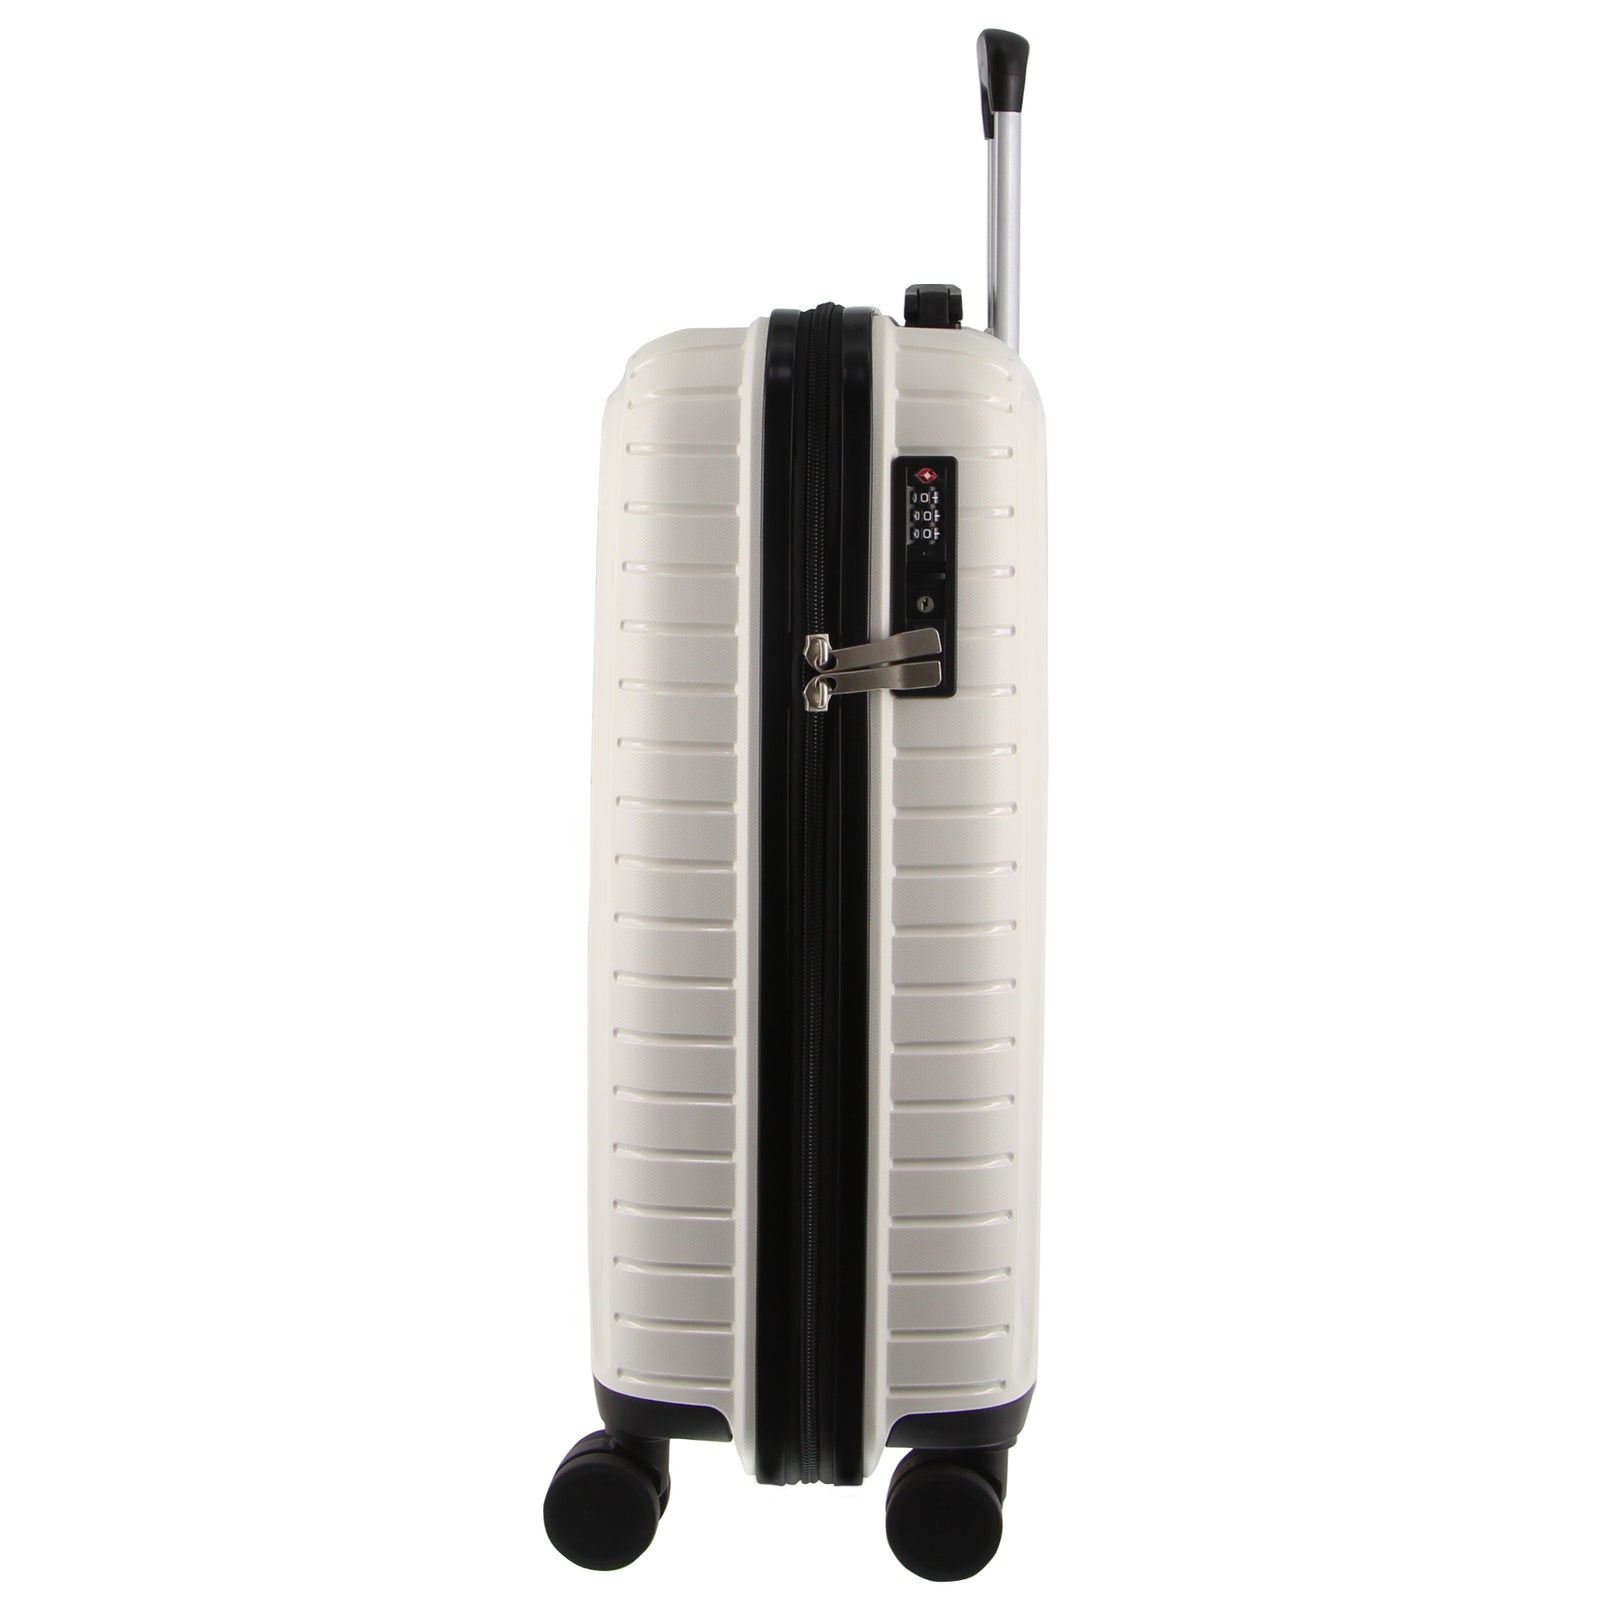 65cm Medium Hard-Shell Suitcase Travel Luggage Bag - White